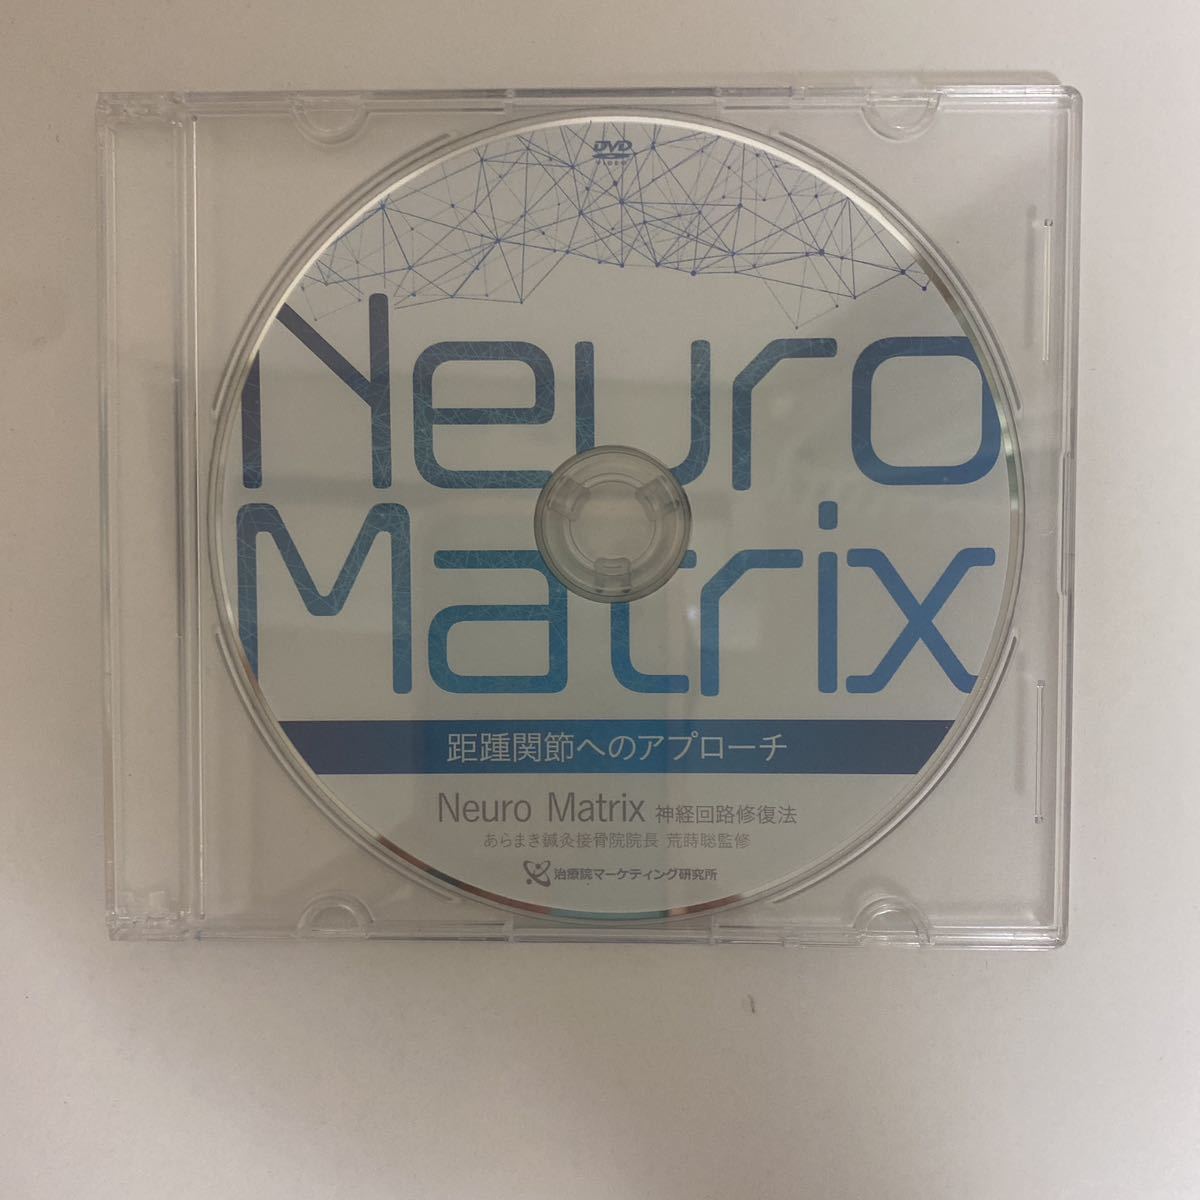 24時間内発送 整体DVD【Neuro Matrix】神経回路修復法 内臓調整法 荒蒔